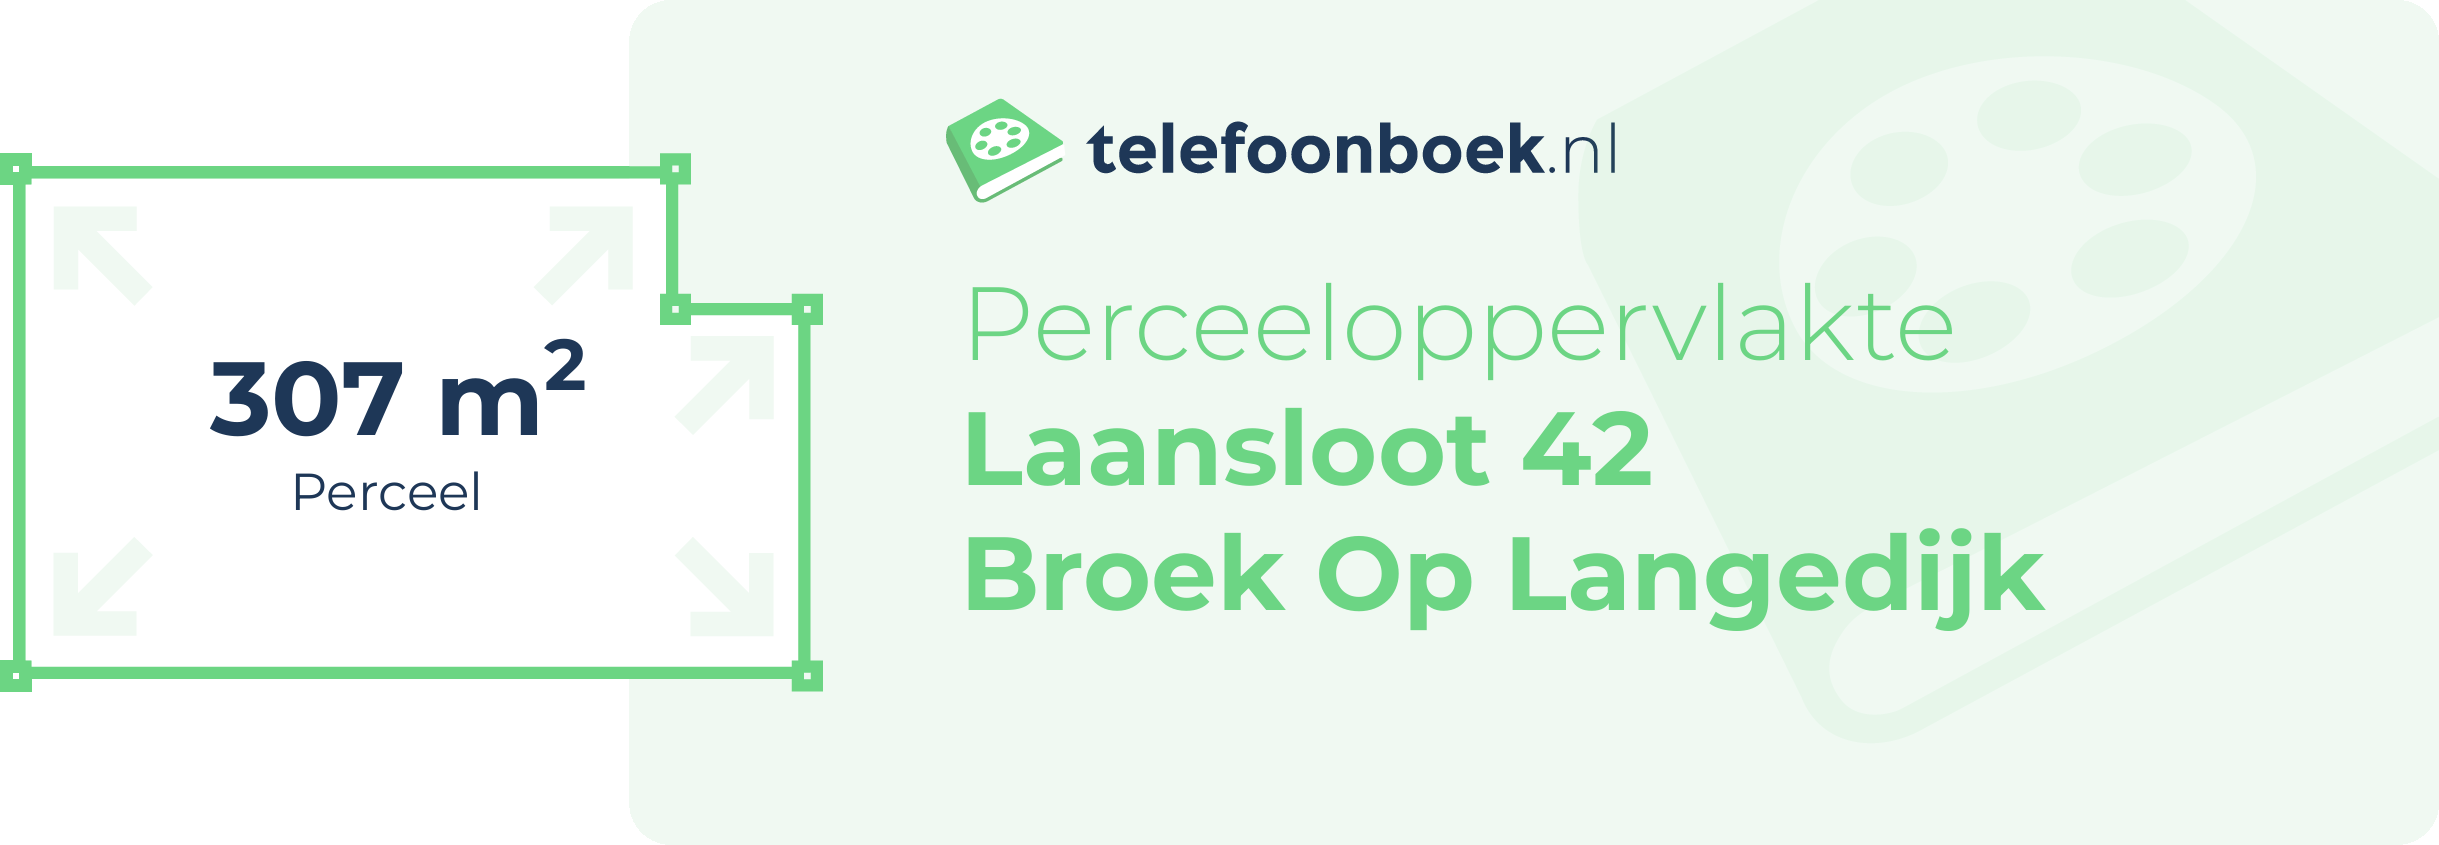 Perceeloppervlakte Laansloot 42 Broek Op Langedijk